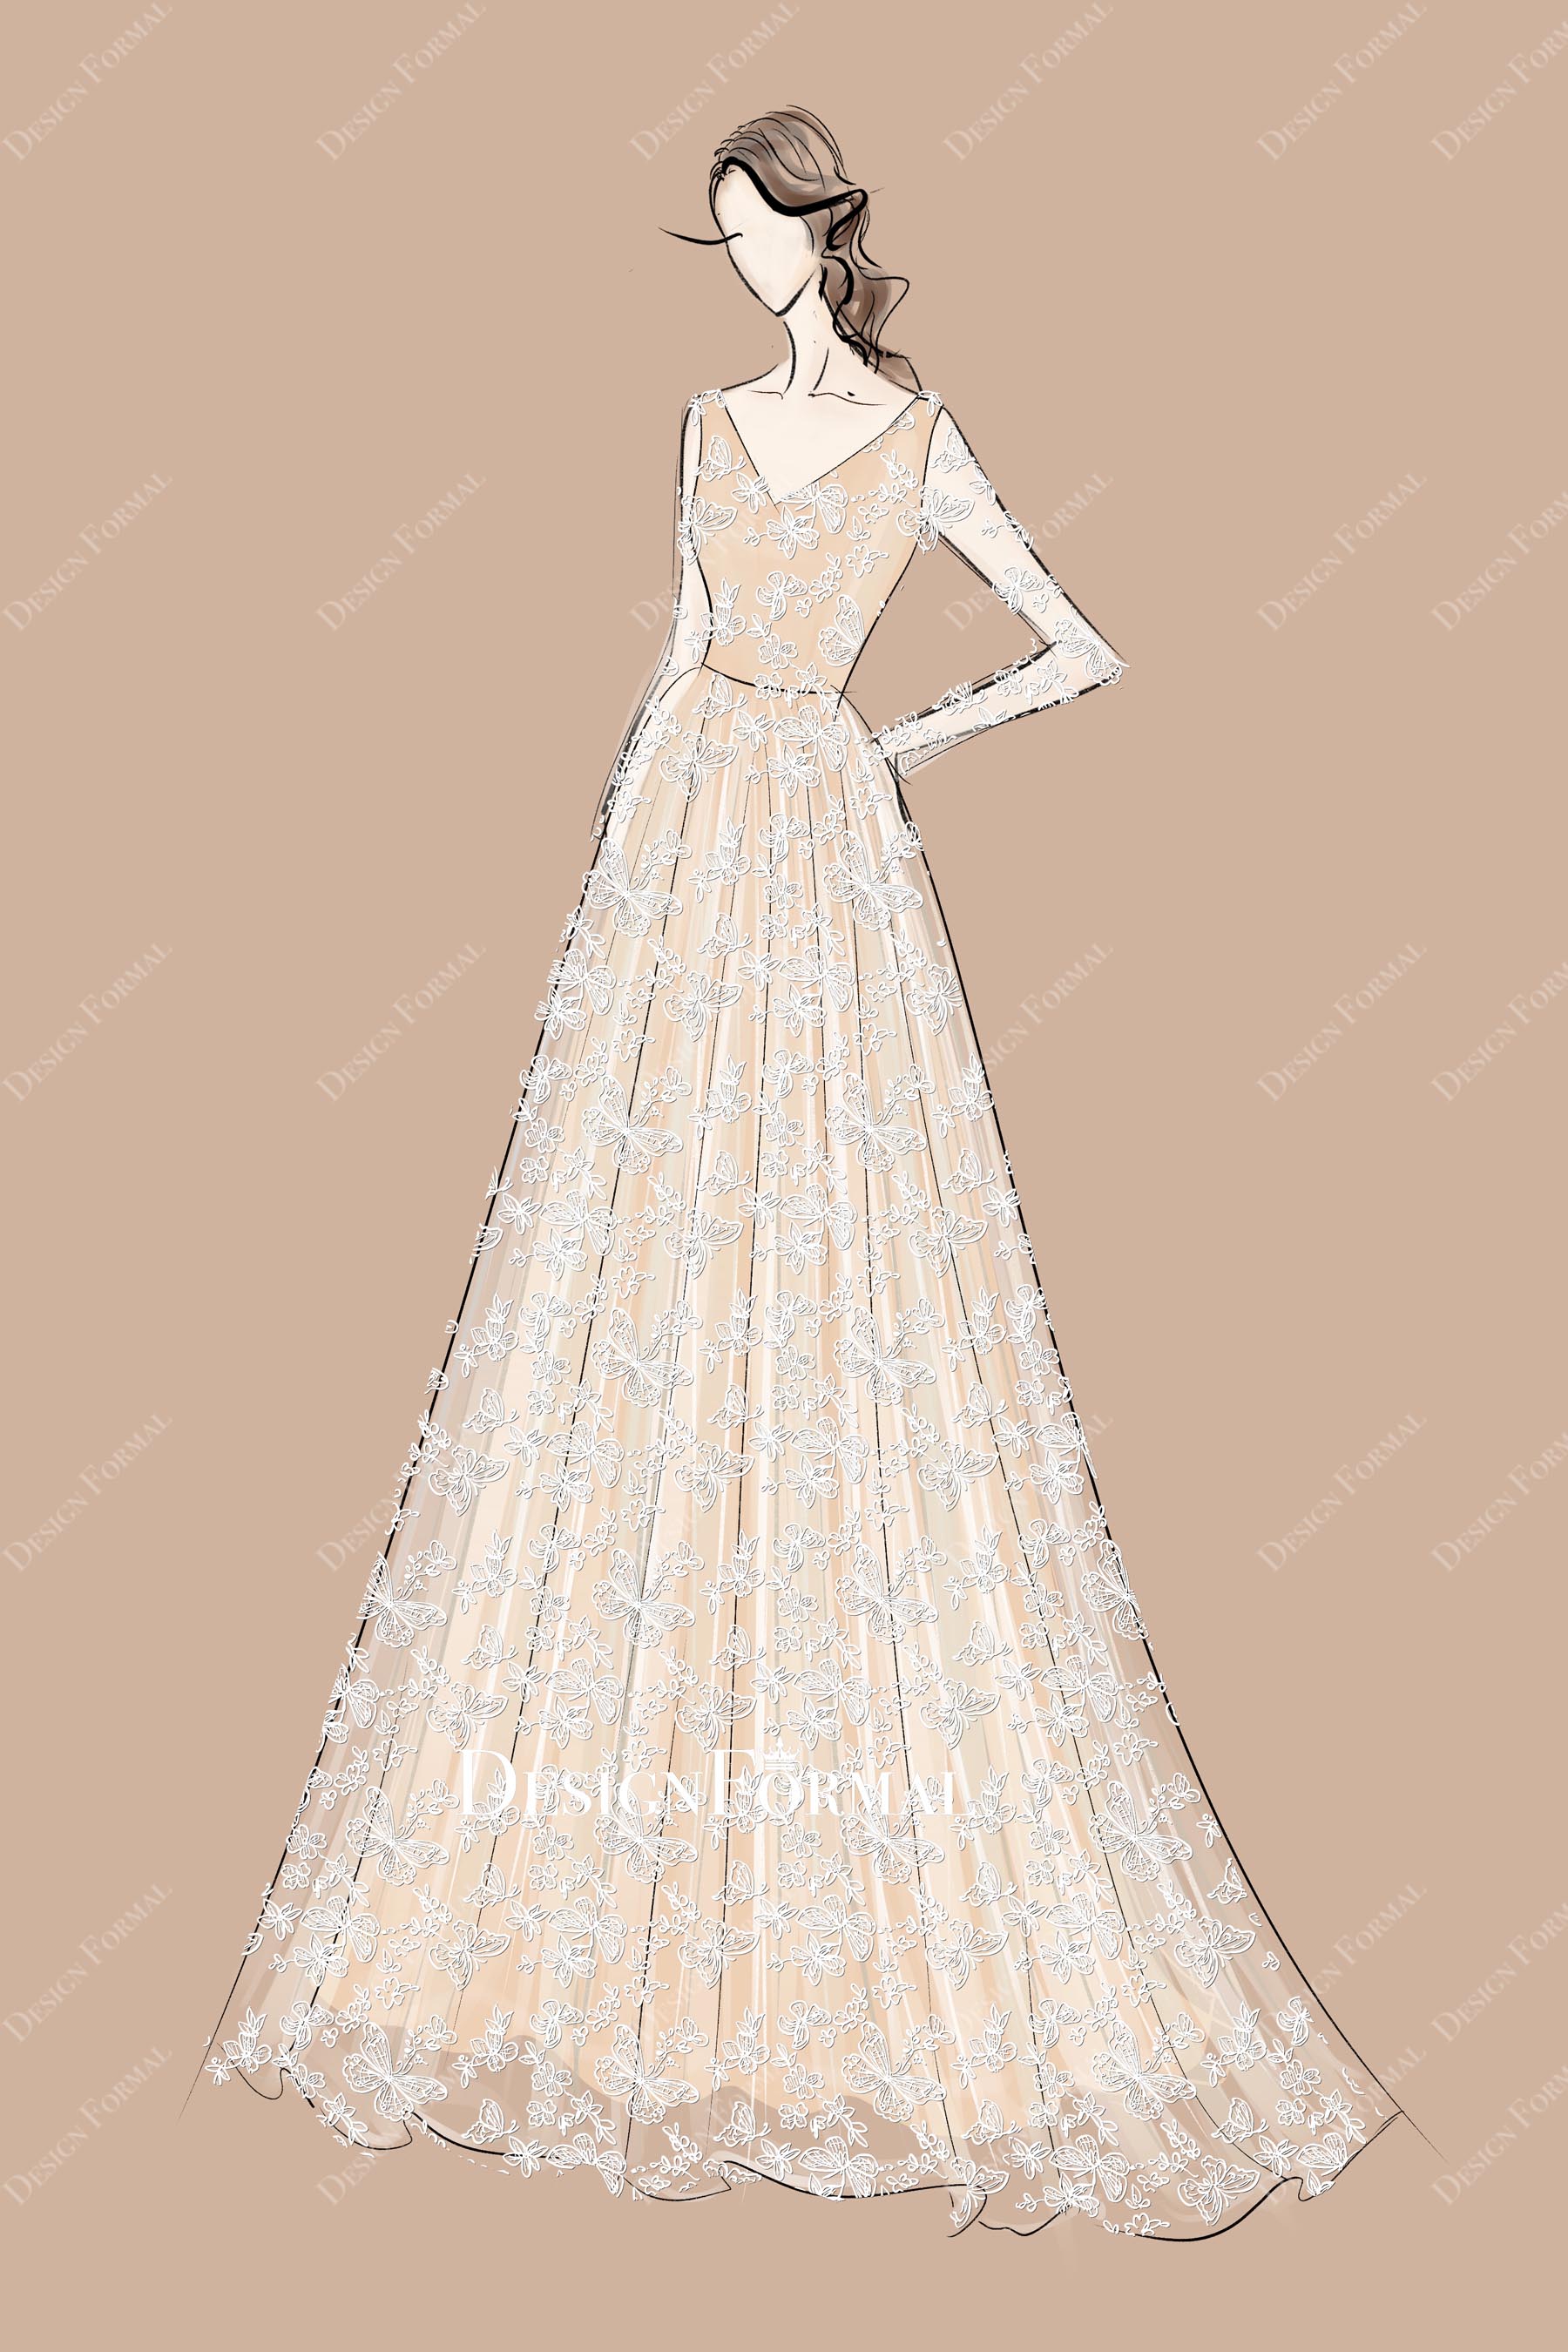 V-neck Butterfly Lace Wedding Dress Sketch